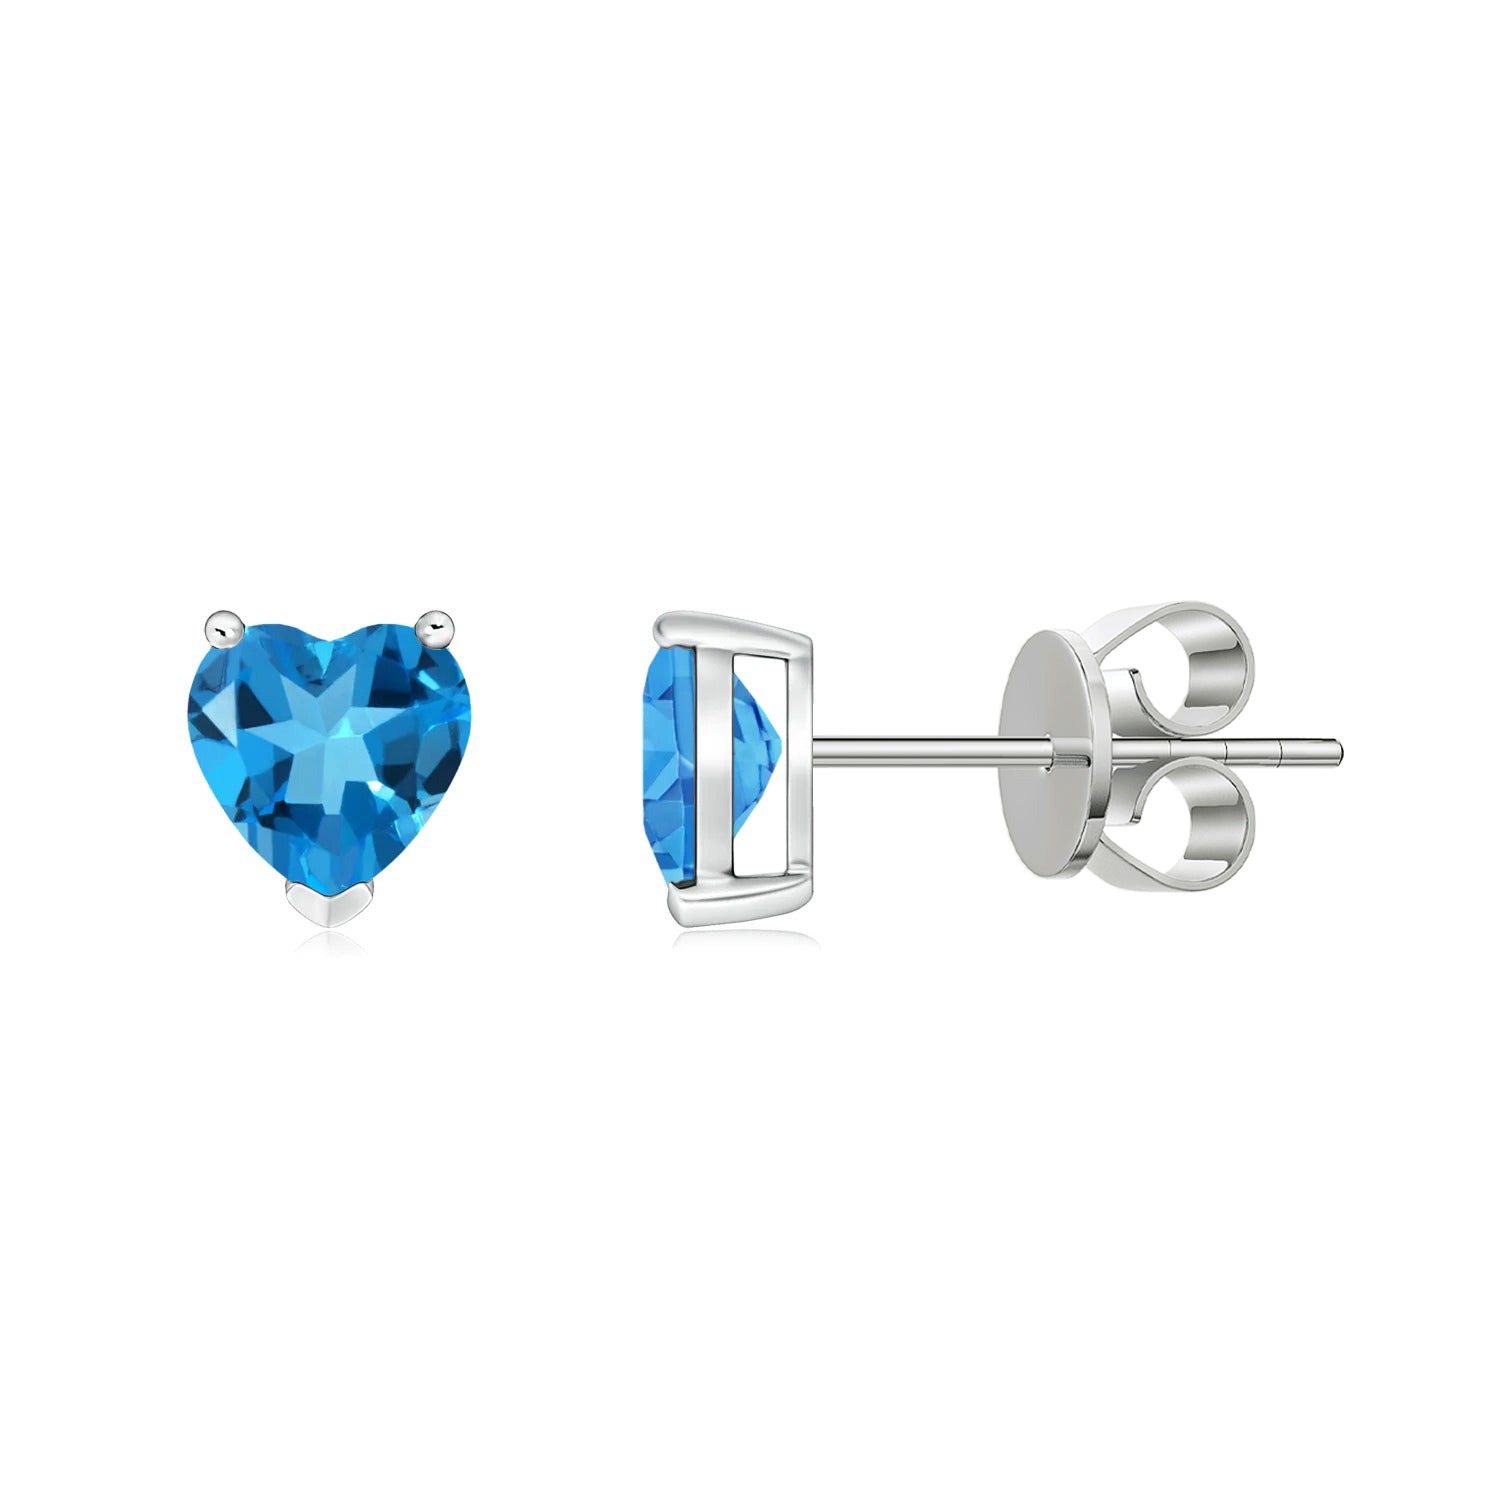 1 CT. Solitaire Heart Shaped Swiss Blue Topaz Stud Earrings